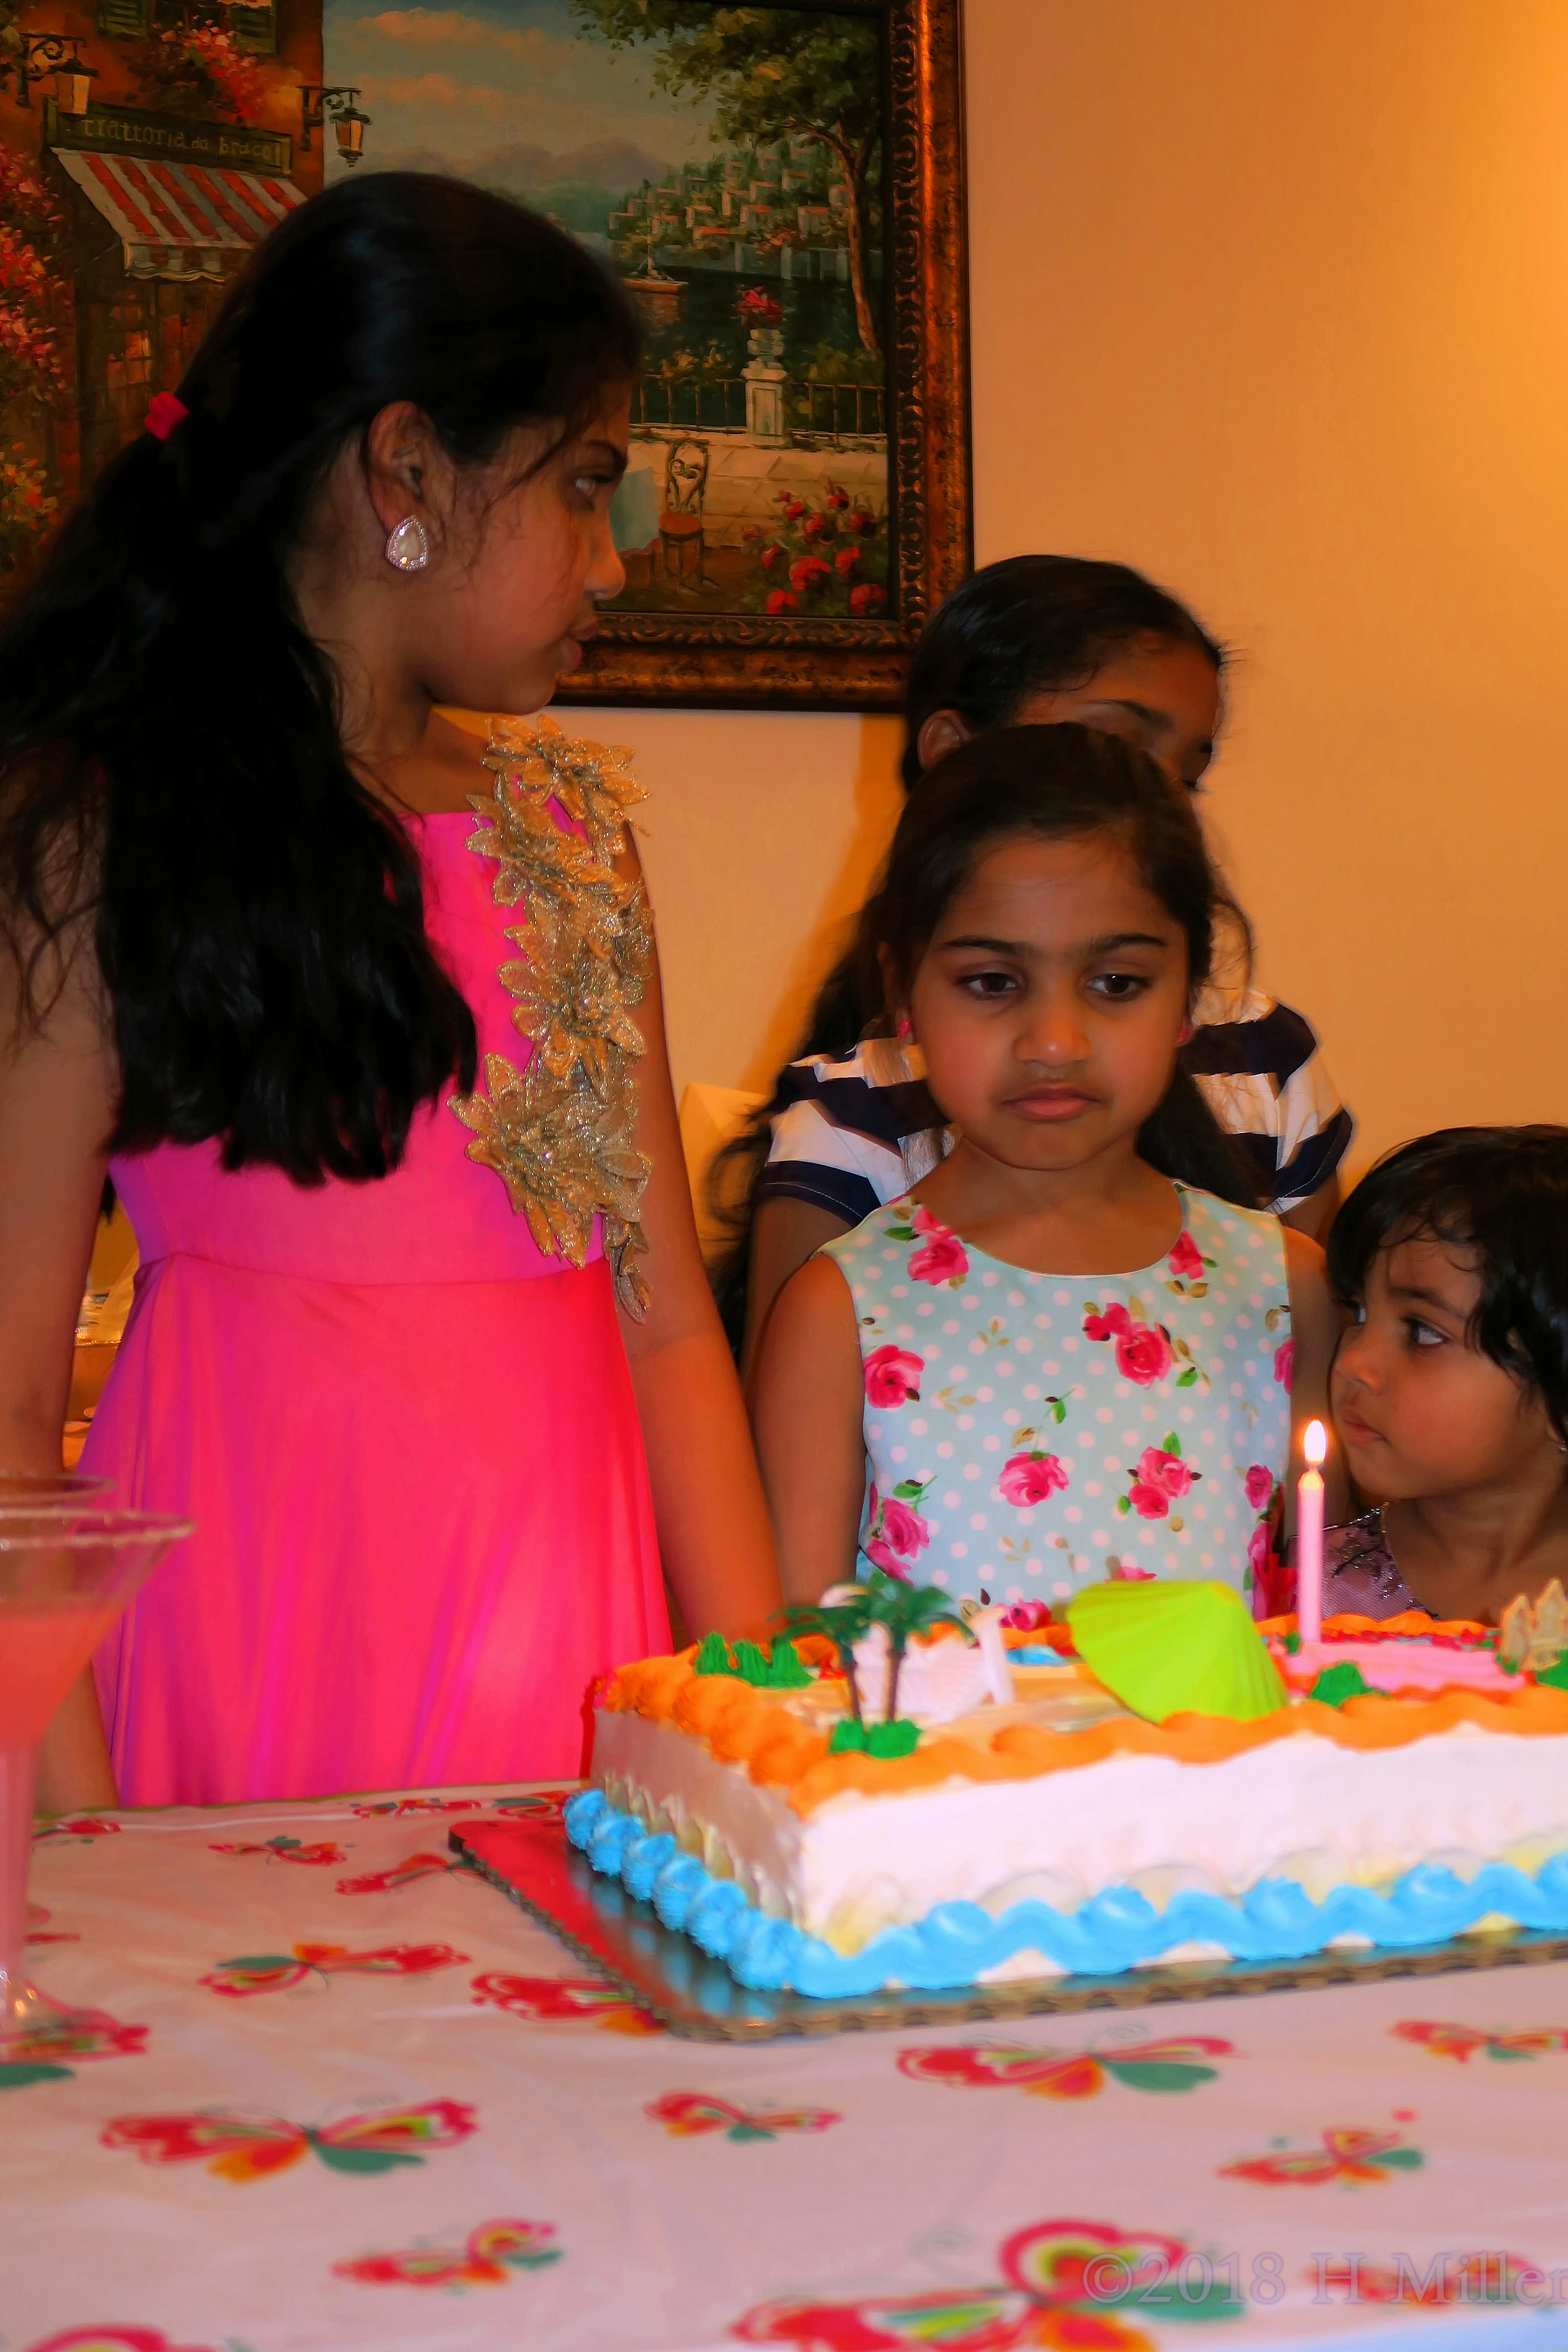 Beautifully Captured Birthday Cake And Birthday Girl! 